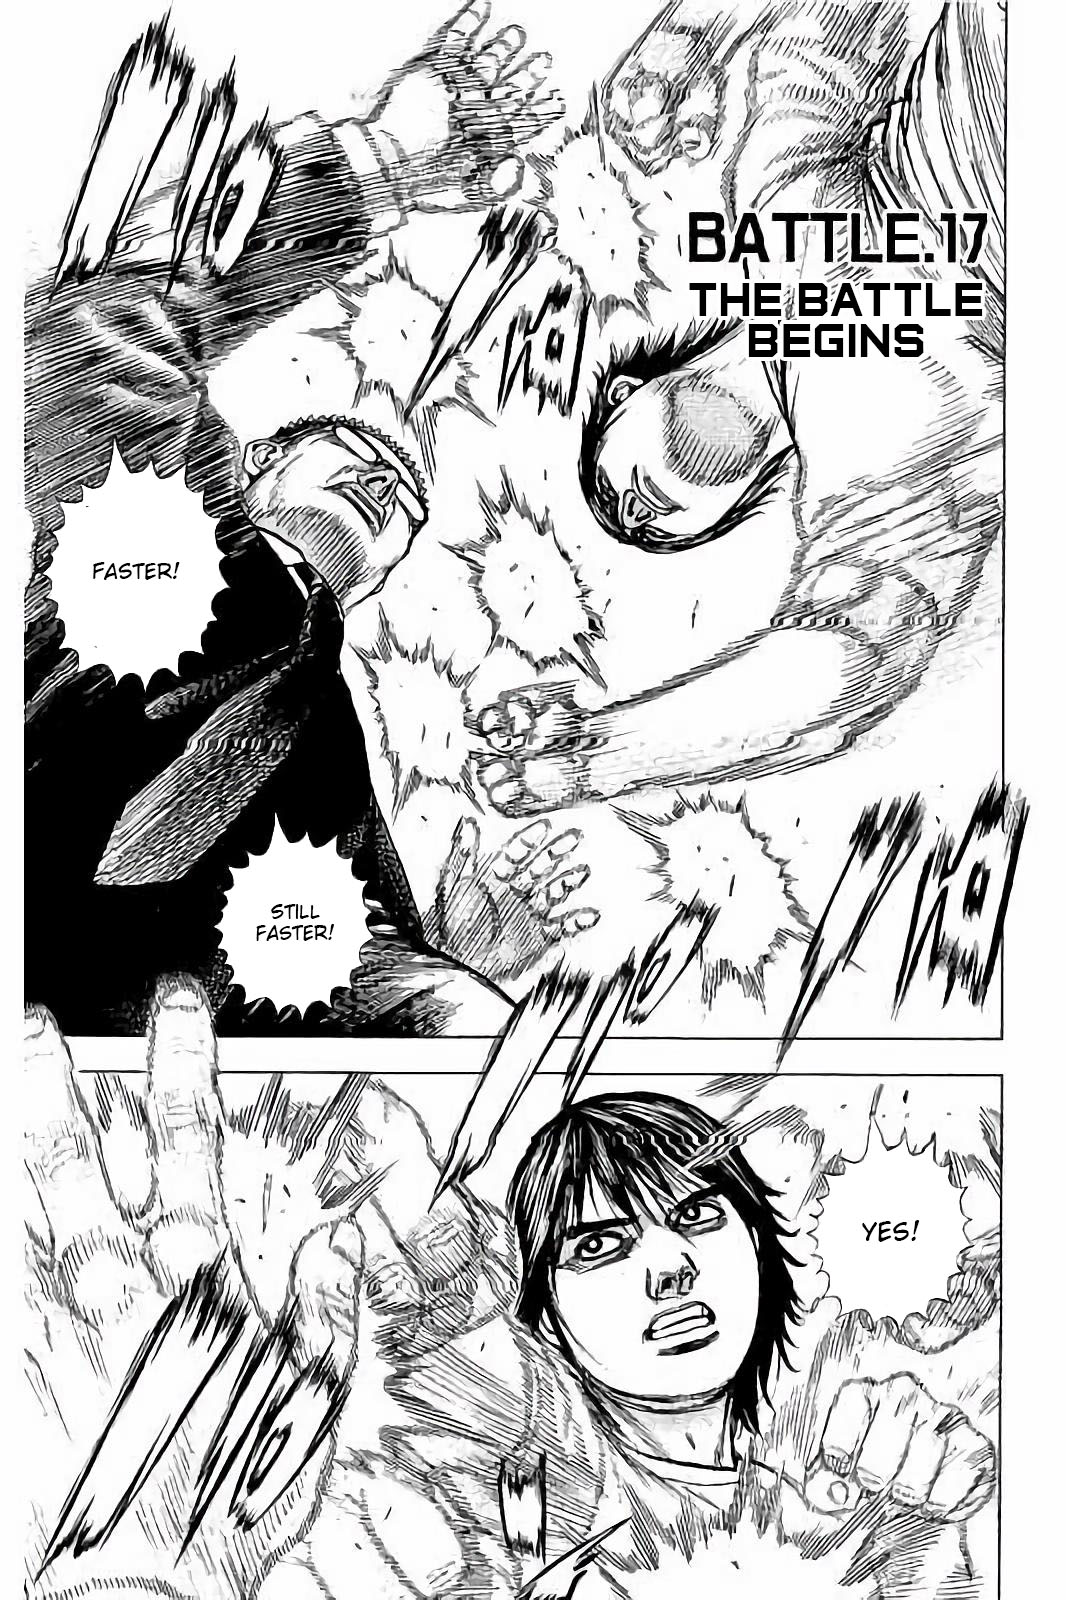 Tough Gaiden - Ryuu Wo Tsugu Otoko Vol.2 Chapter 17: The Battle Begins - Picture 1